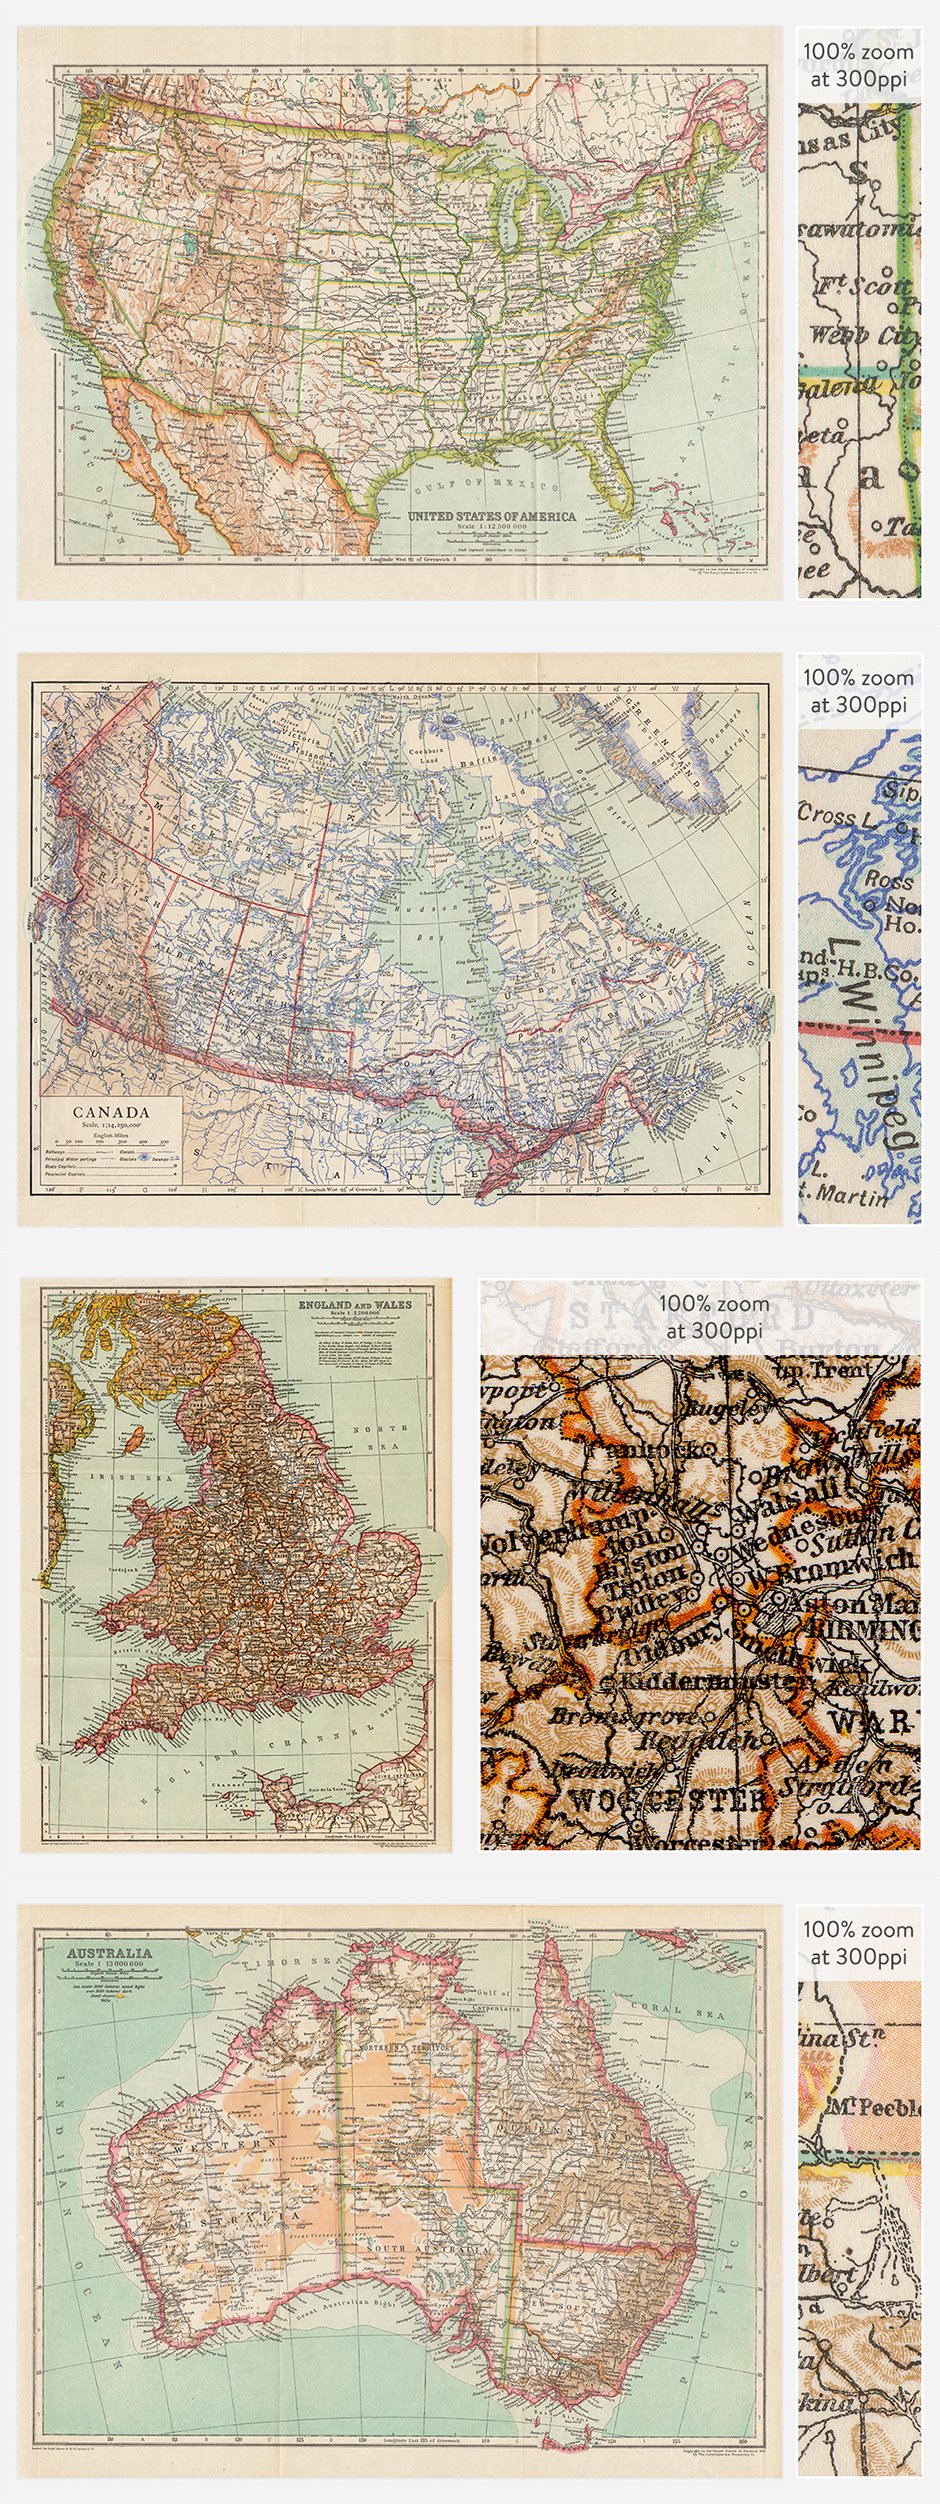 Antique Maps Vol. 2